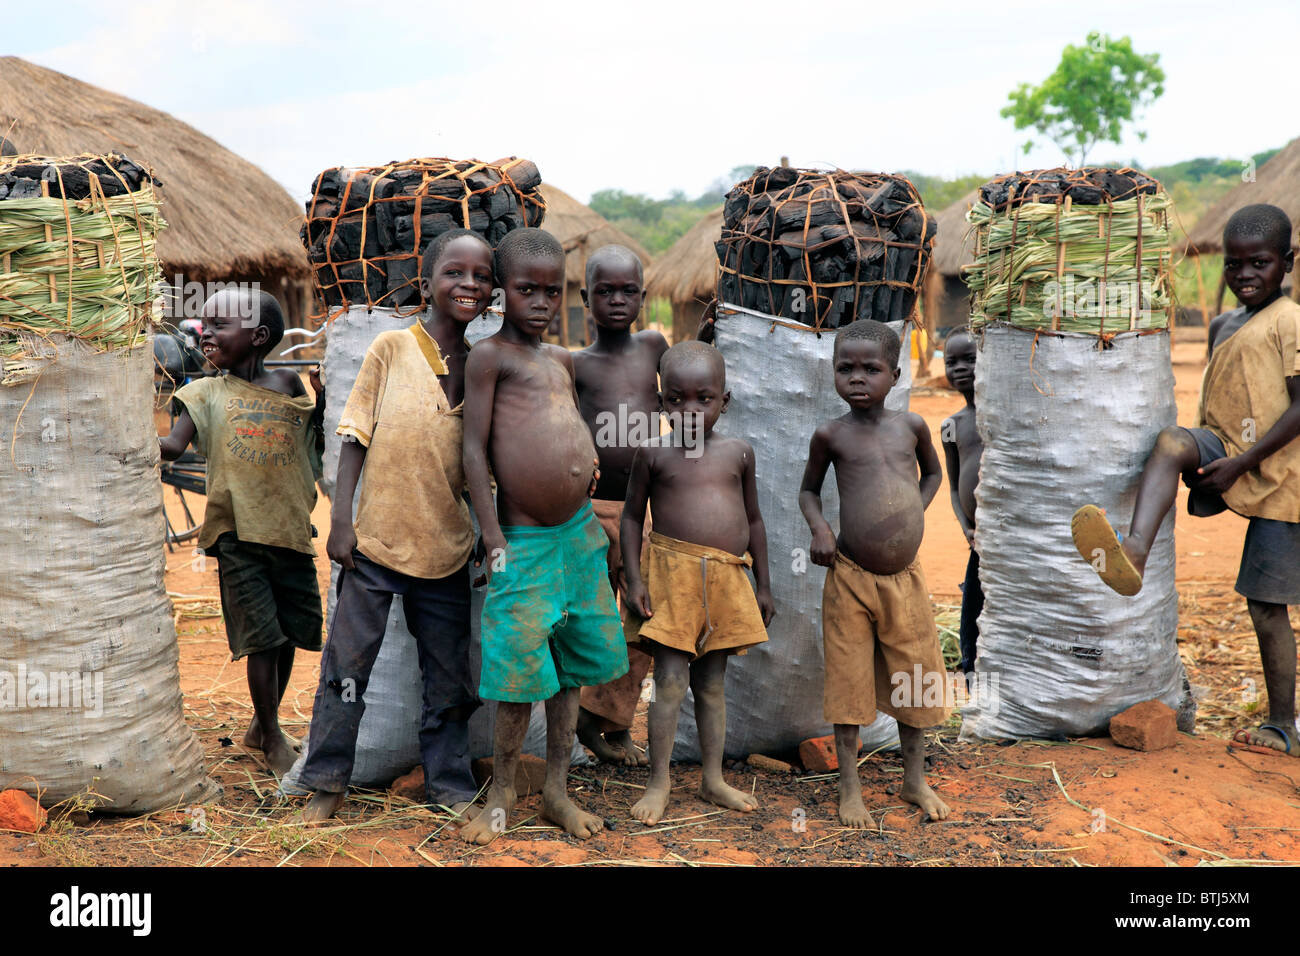 Village, Acholiland, Uganda, East Africa Stock Photo